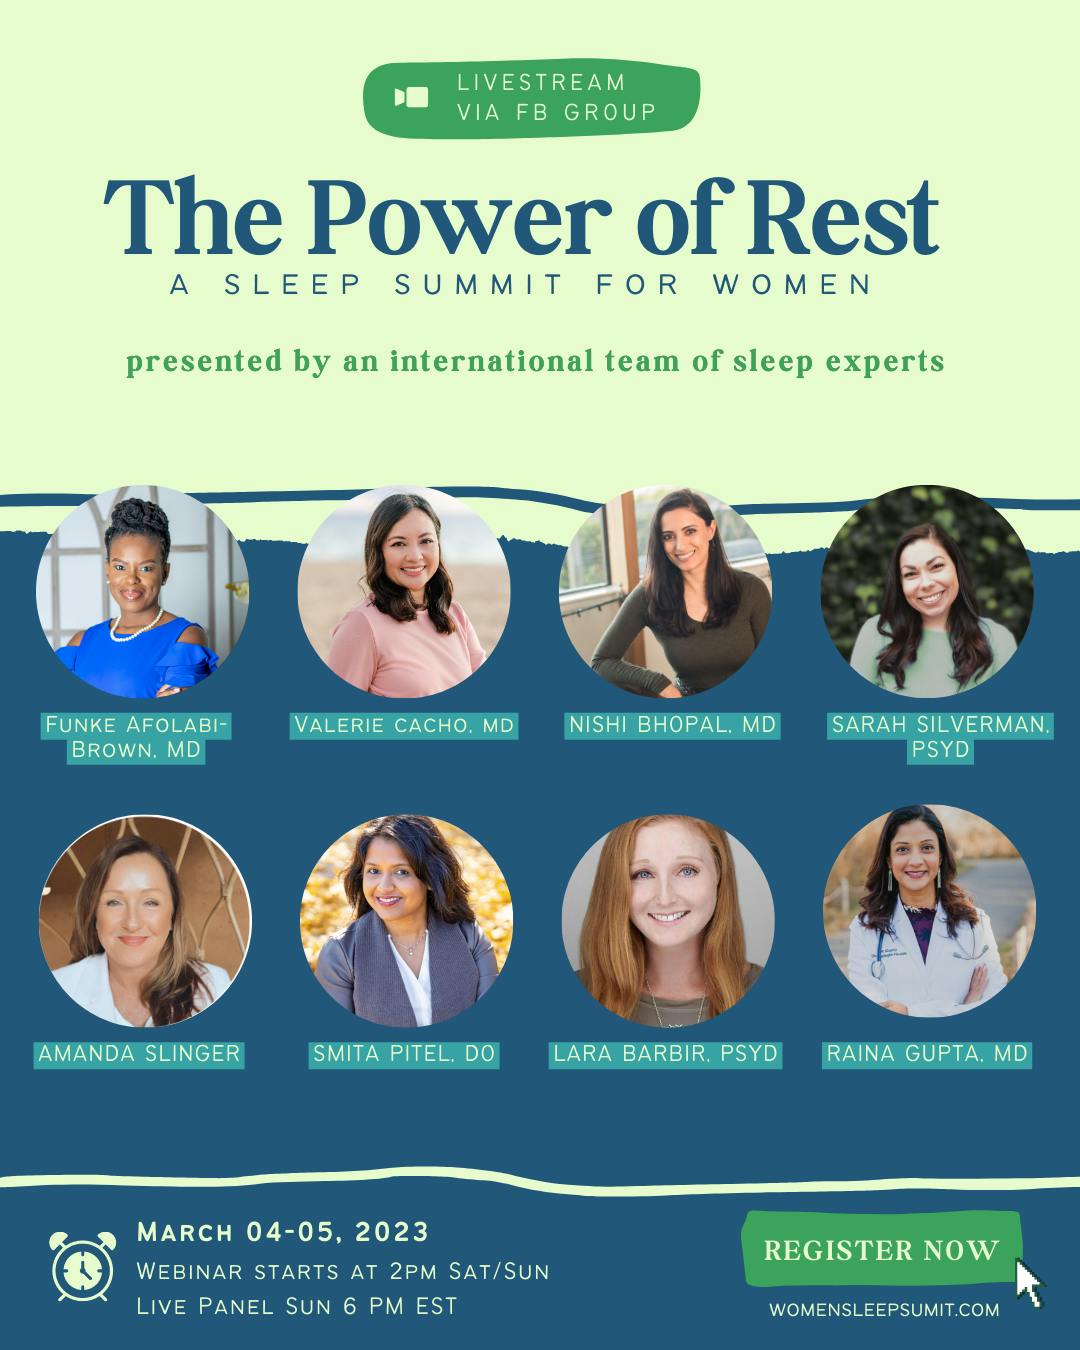 Support The Women's Sleep Summit